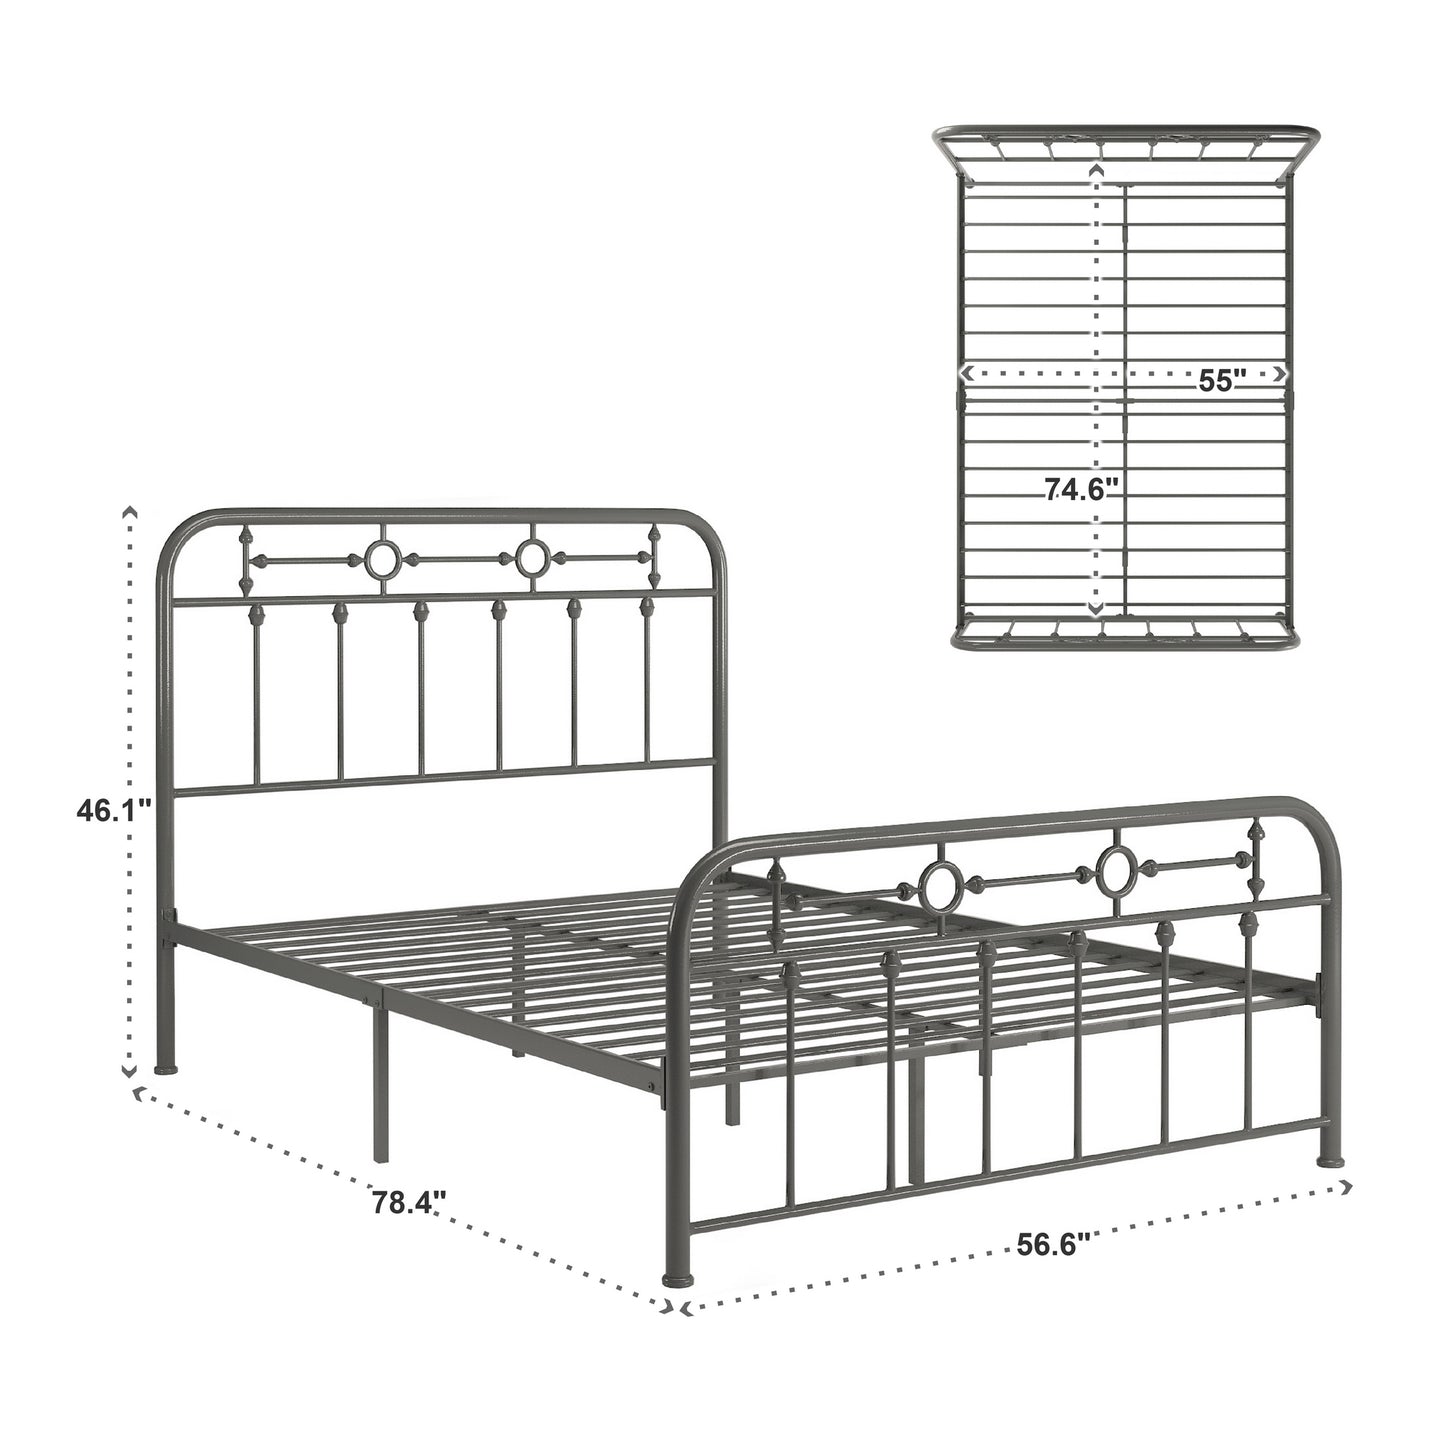 Metal Spindle Platform Bed - Grey, Full Size (Full Size)